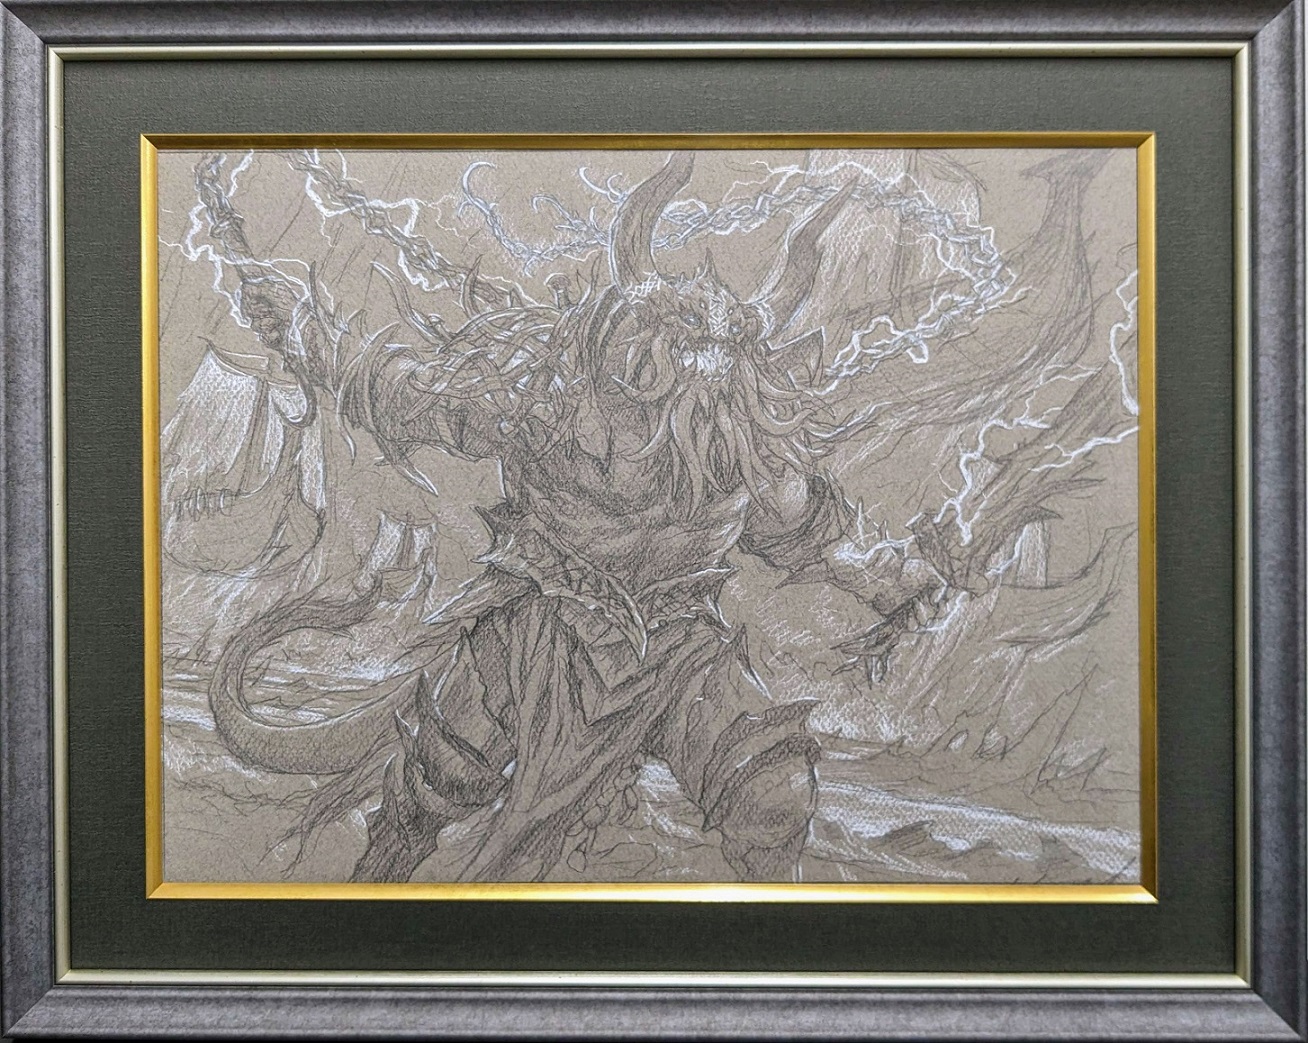 Kardur, Doomscourge (Sketch) by Chris Rahn from Kaldheim